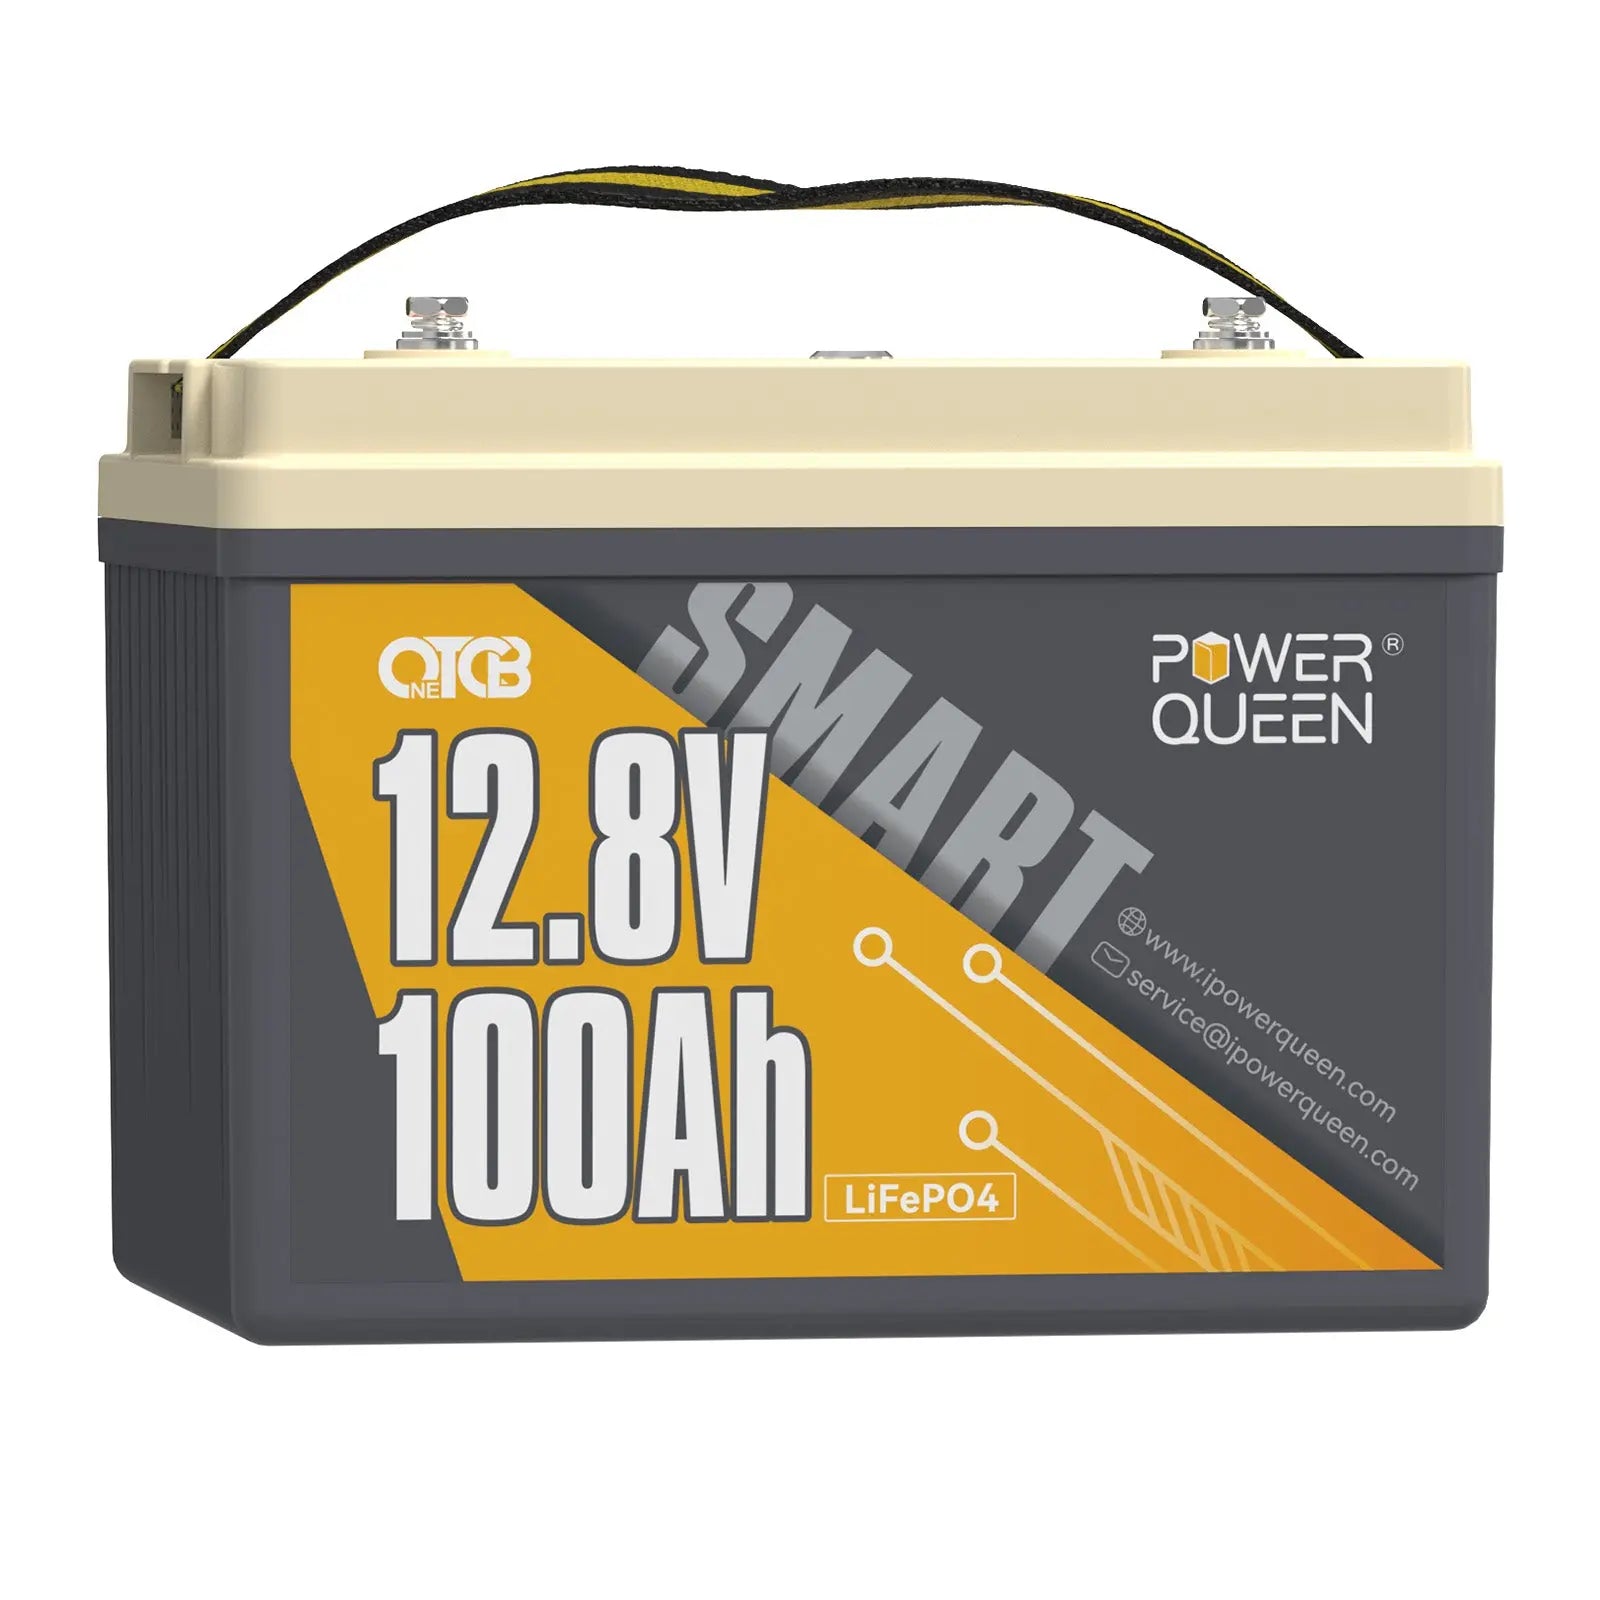 Power Queen 12.8V 100Ah OTCB Smart LiFePO4 Battery, Built-in 100A Smart BMS Power Queen